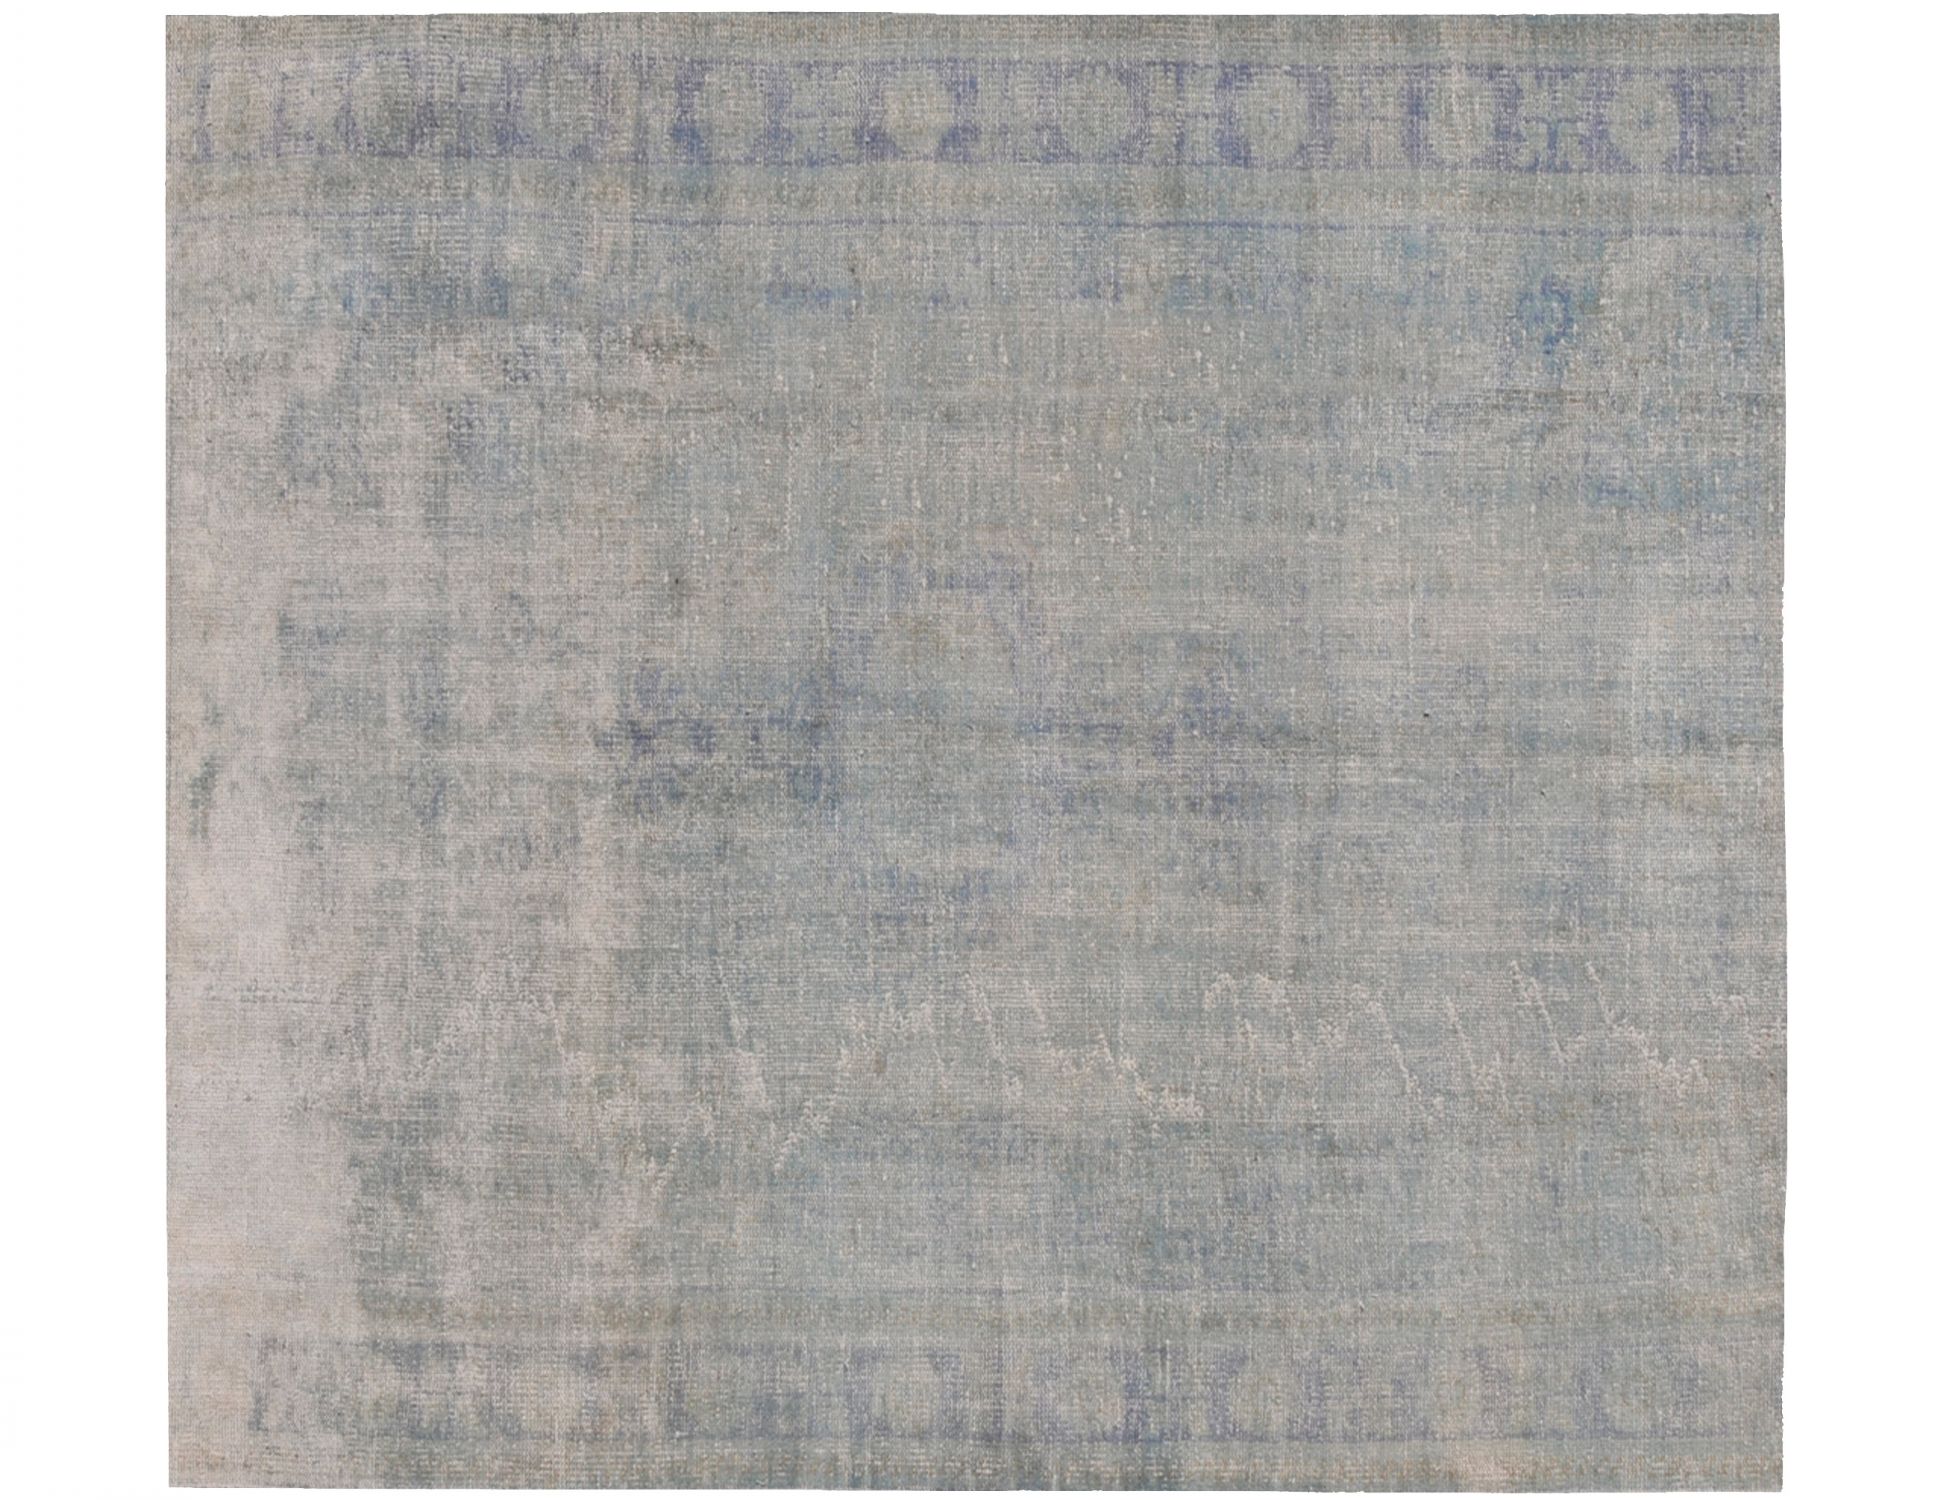 Vintage Teppich  blau <br/>185 x 185 cm